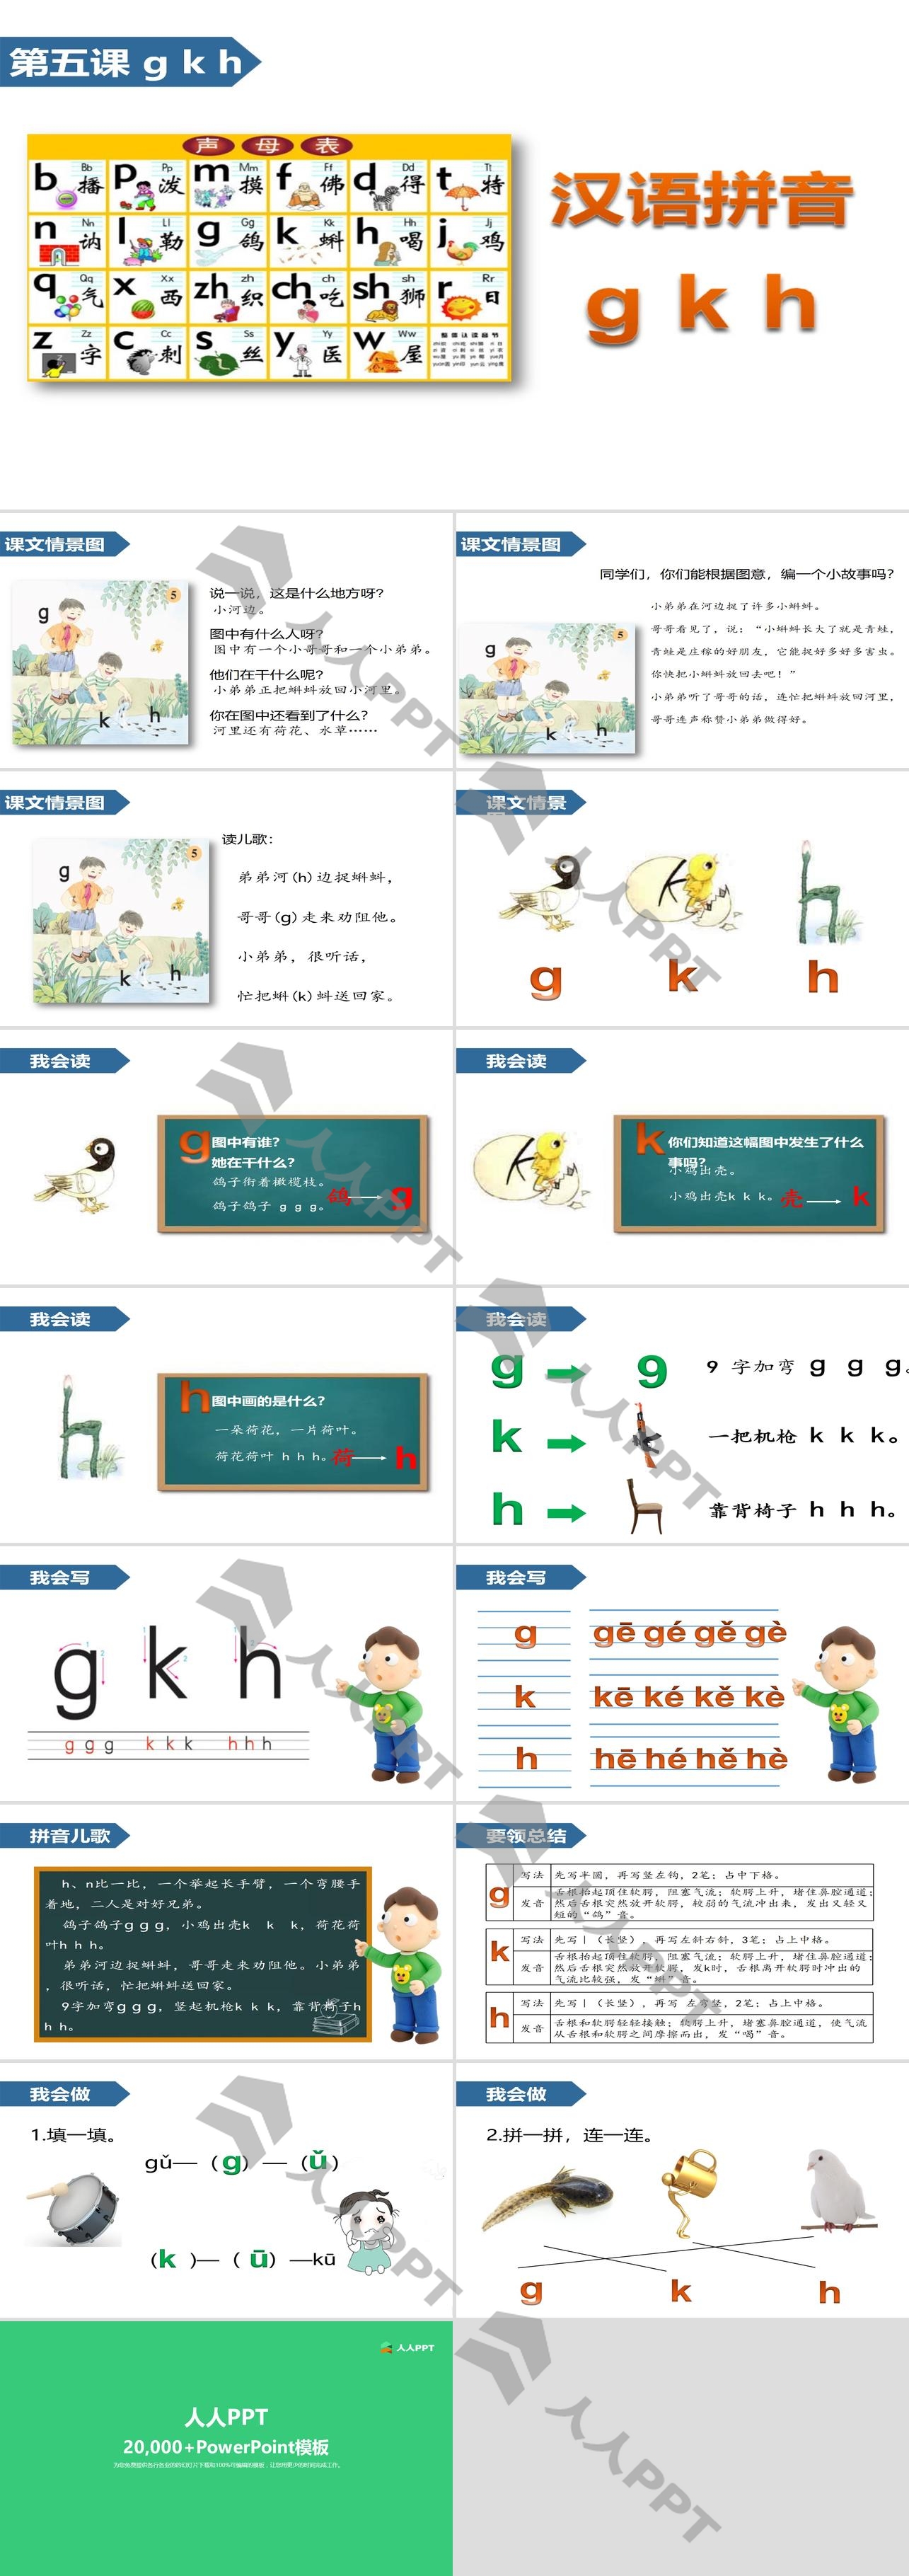 《gkh》汉语拼音PPT长图